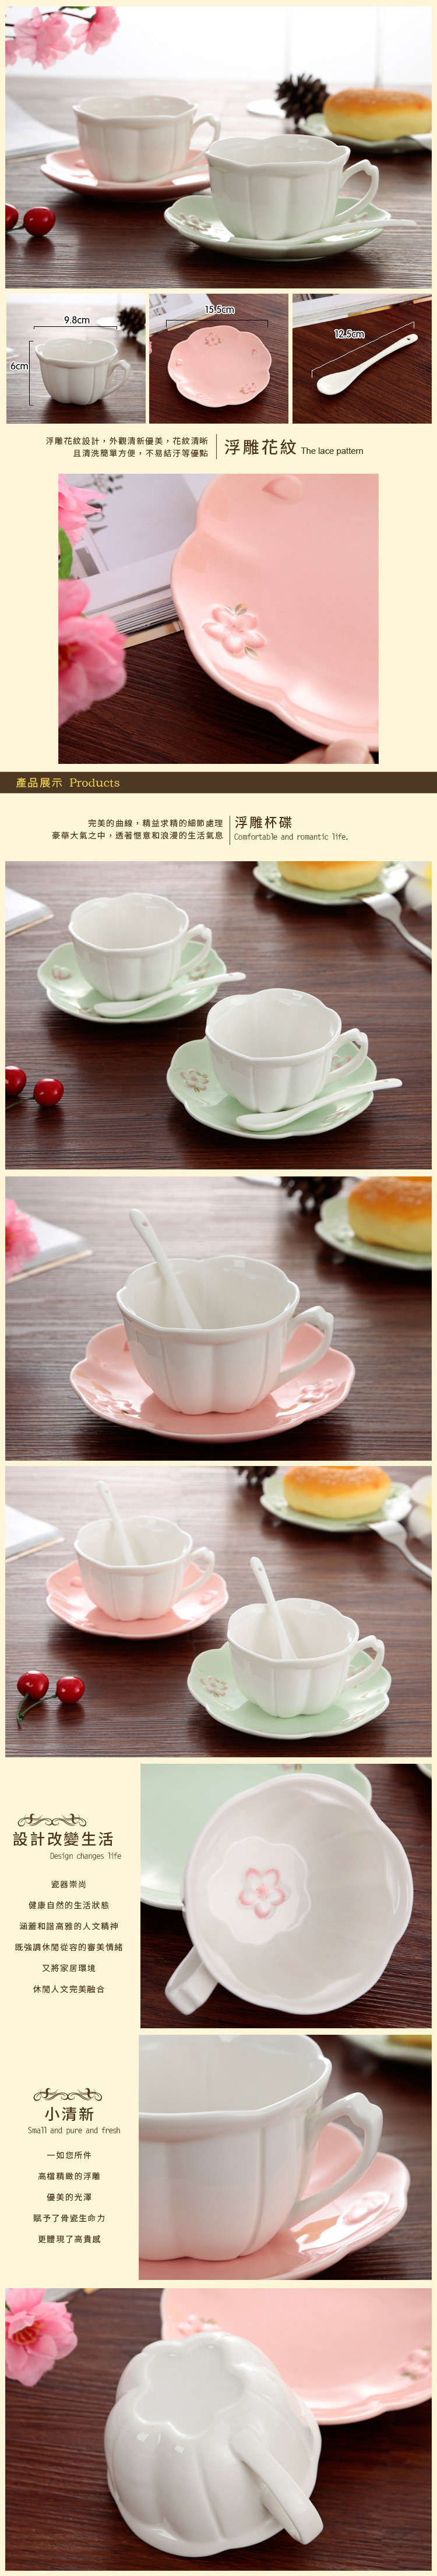 家居生活雜貨鋪 日式櫻花浮雕骨瓷杯碟下午茶套組-粉碟